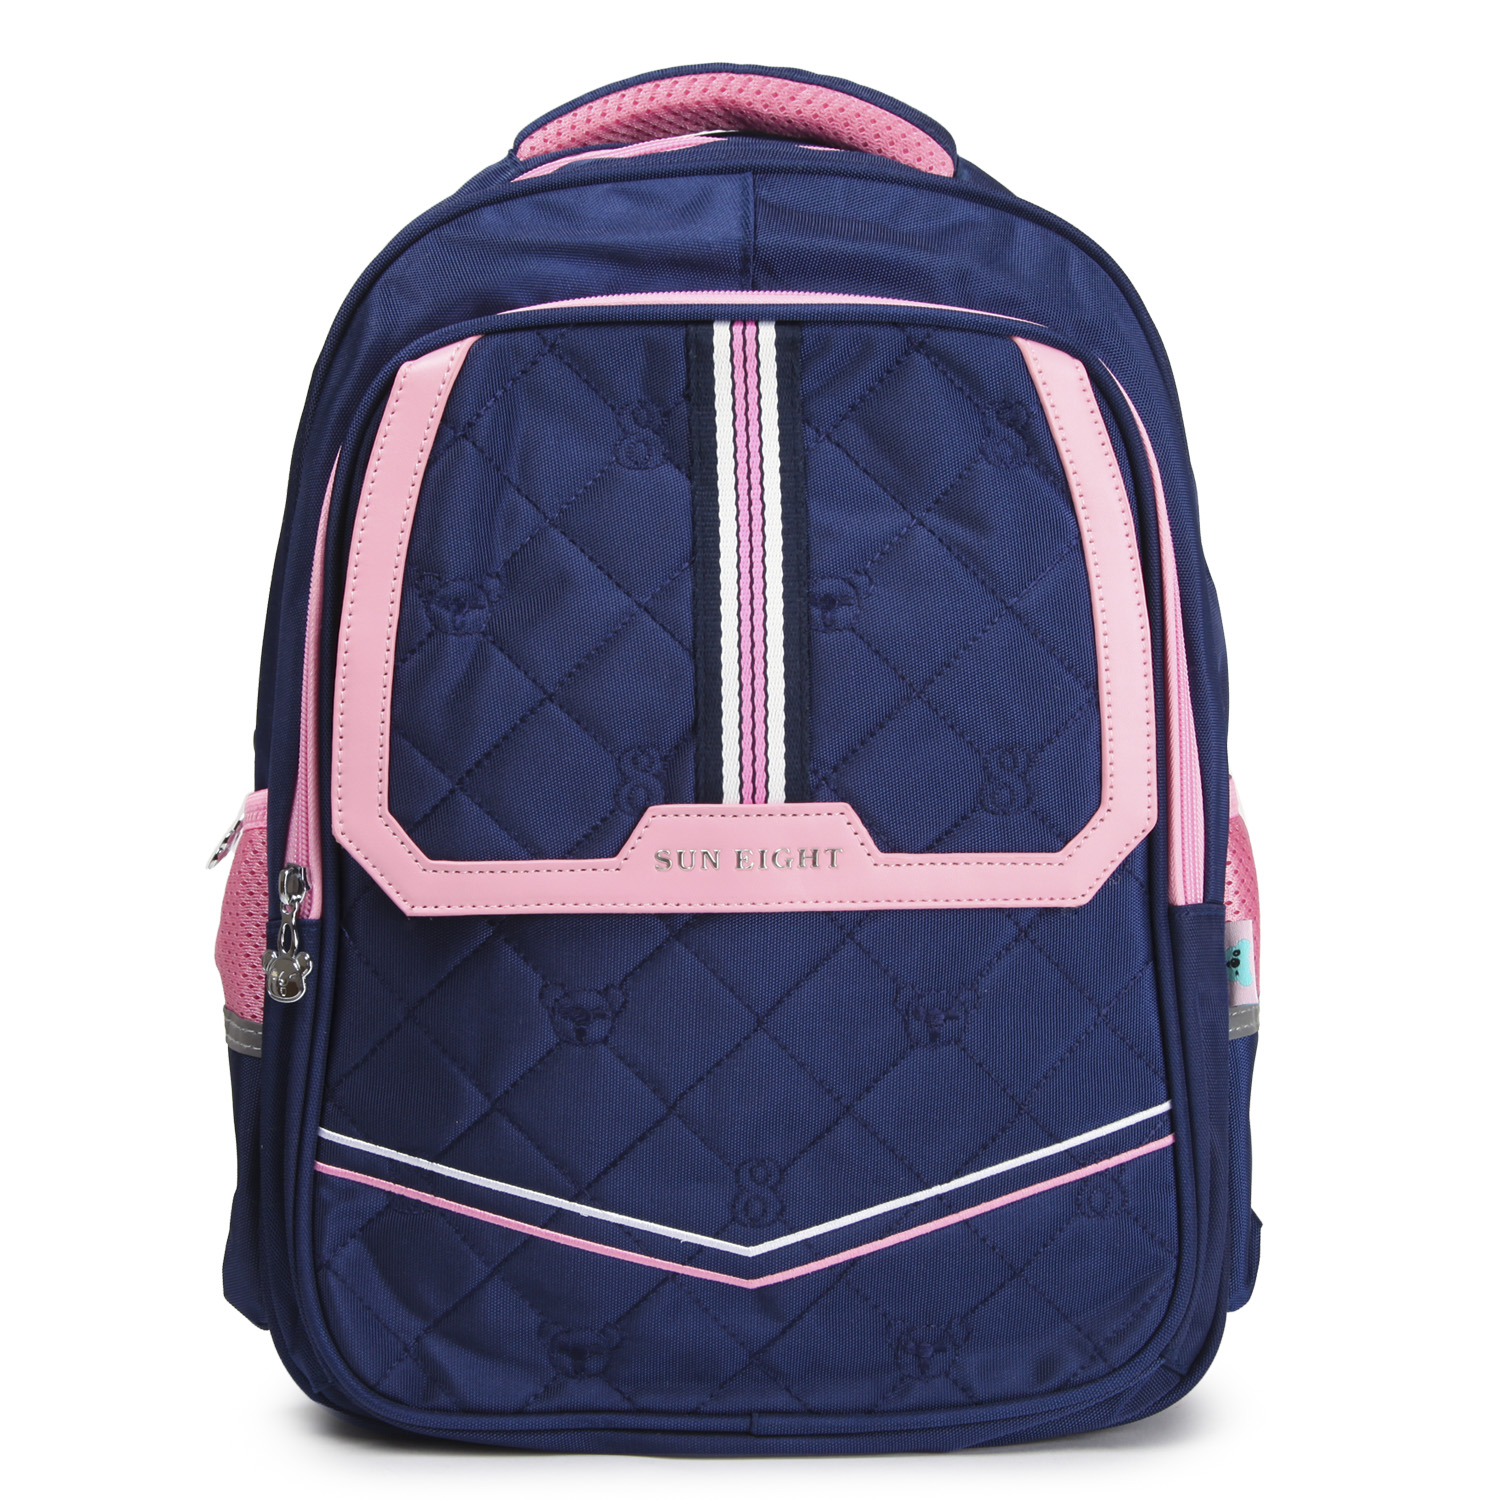 Рюкзак для девочки школьный Suneight SE2824 - фото 1